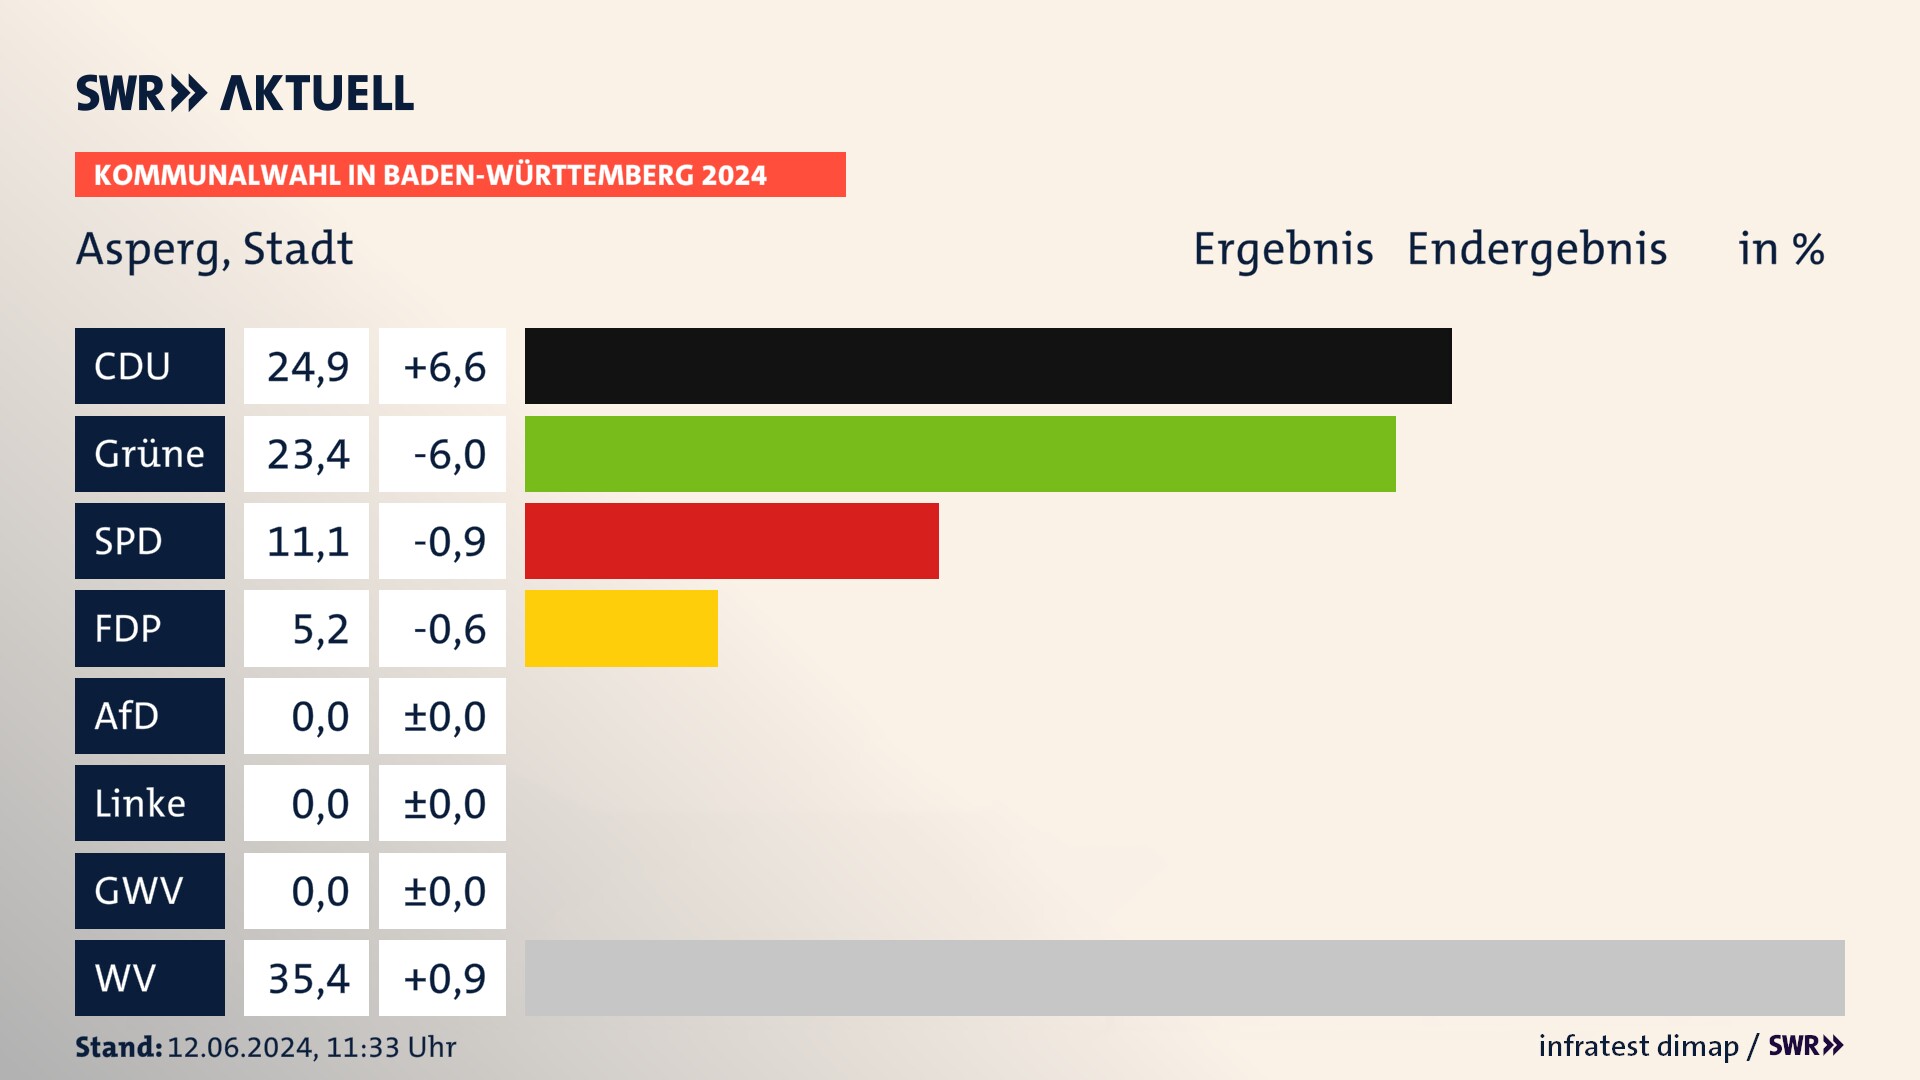 Kommunalwahl 2024 Endergebnis Zweitstimme für Asperg. In Asperg, Stadt erzielt die CDU 24,9 Prozent der gültigen  Stimmen. Die Grünen landen bei 23,4 Prozent. Die SPD erreicht 11,1 Prozent. Die FDP kommt auf 5,2 Prozent. Die Wählervereinigungen landen bei 35,4 Prozent.